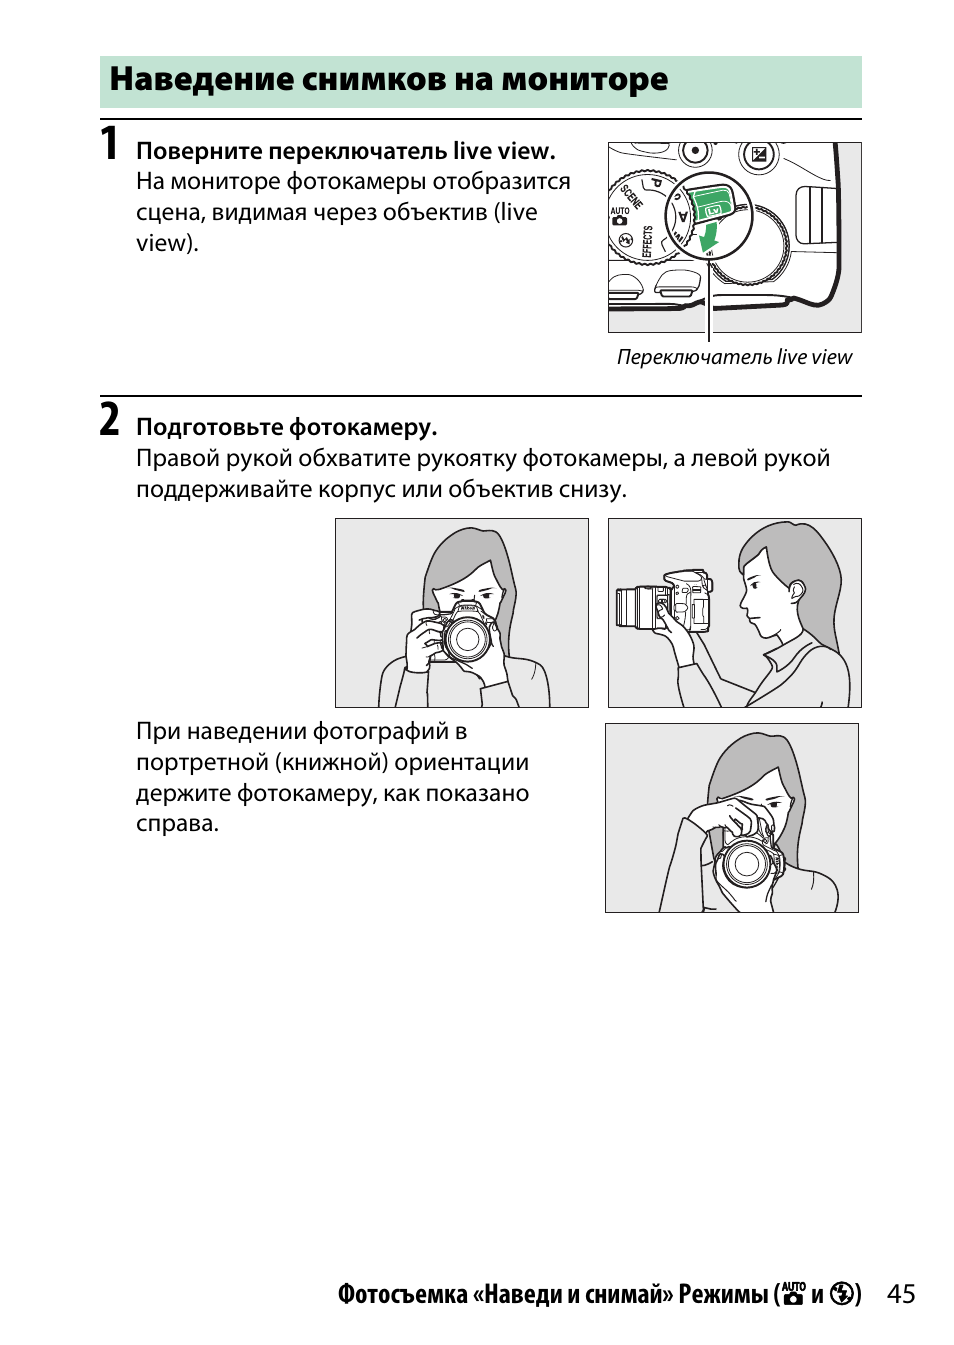 Наведение снимков на мониторе | Инструкция по эксплуатации Nikon D5500 | Страница 69 / 436